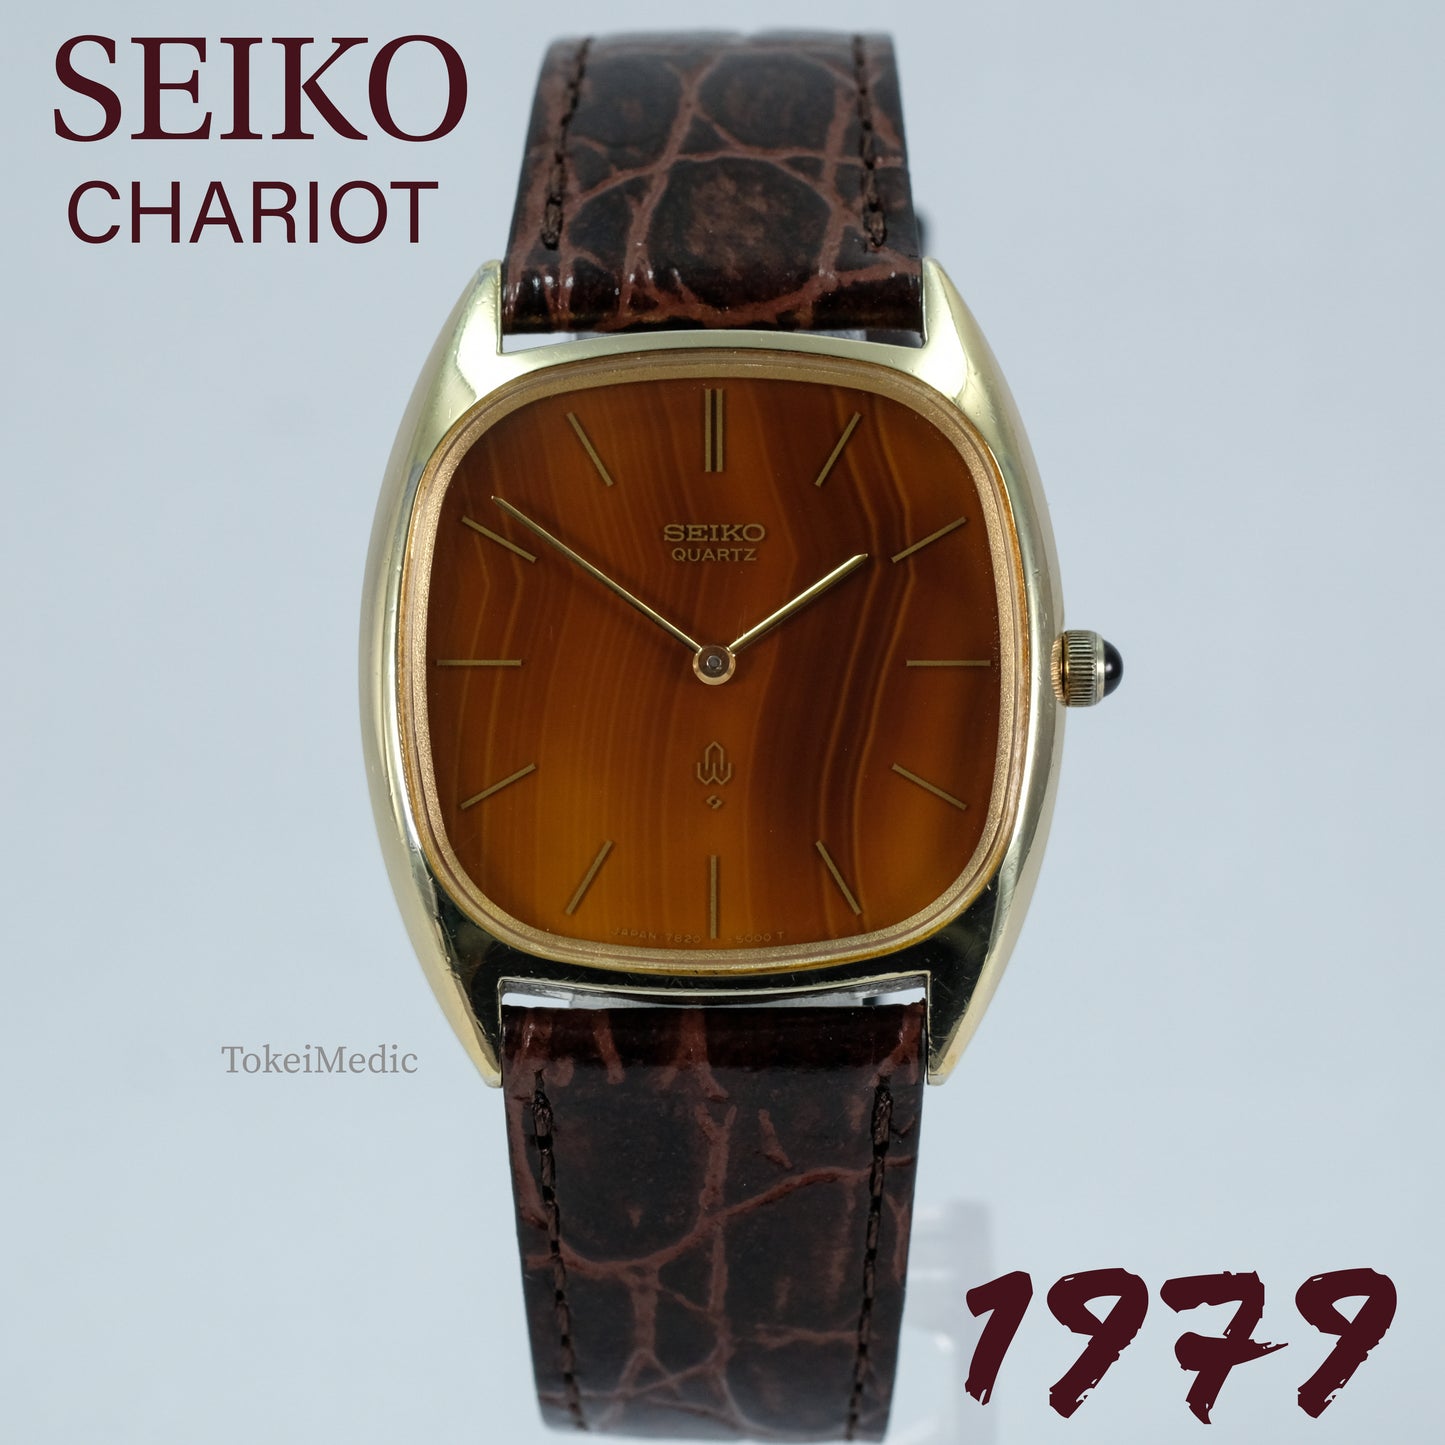 1979 Seiko Chariot Sardonyx Stone Dial 7820-5000